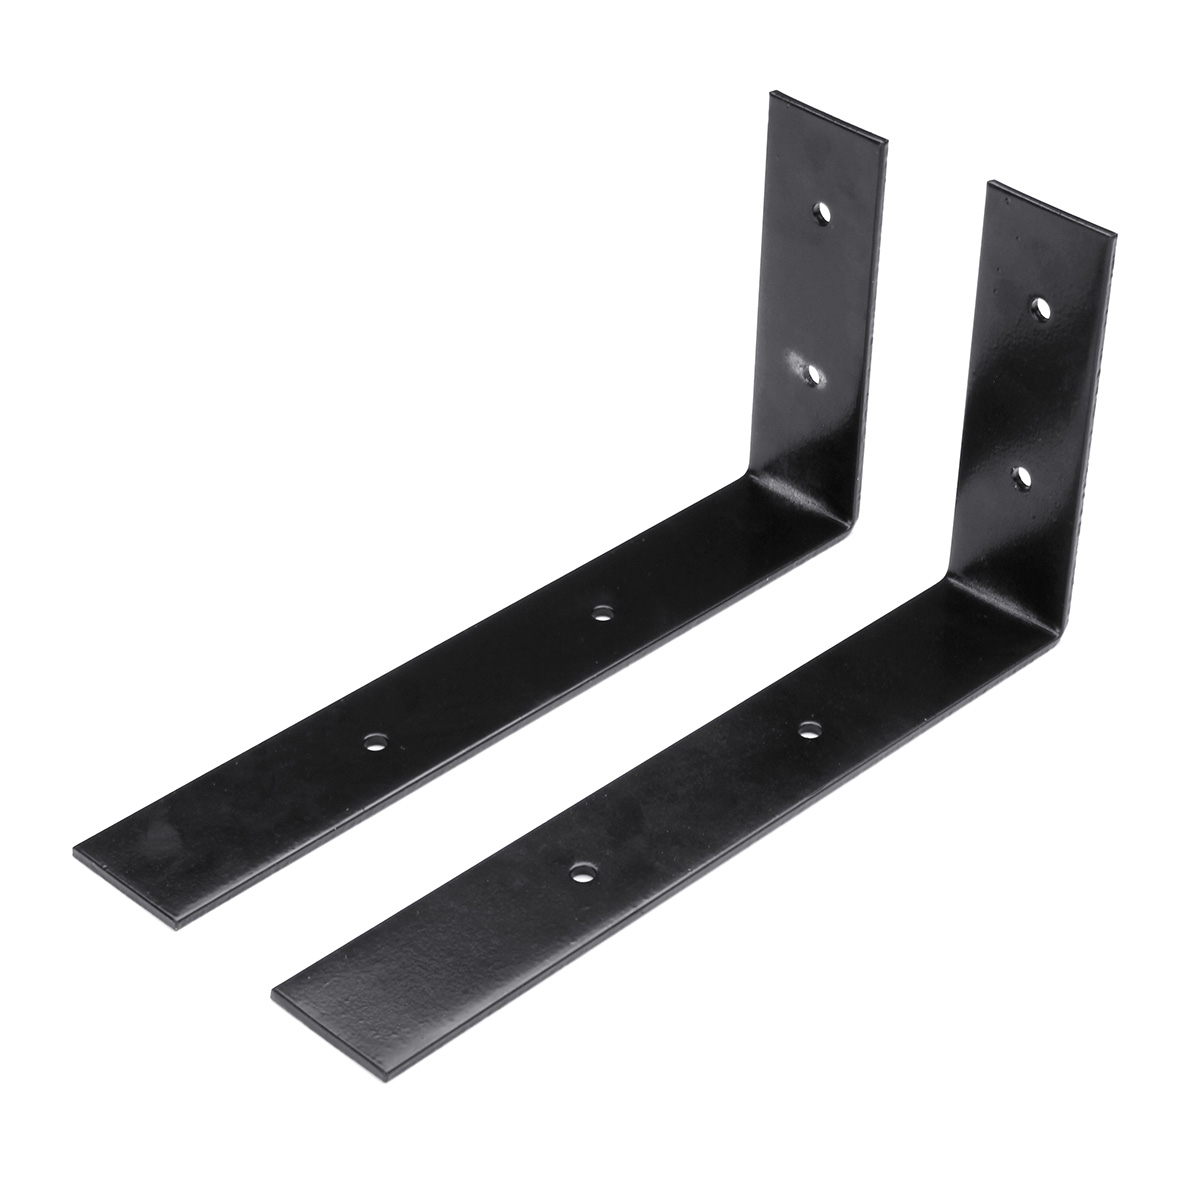 

2Pcs Heavy Duty Scaffold Board Brackets For Wall Shelf Display Floating Boards Kitchen Storage Rack